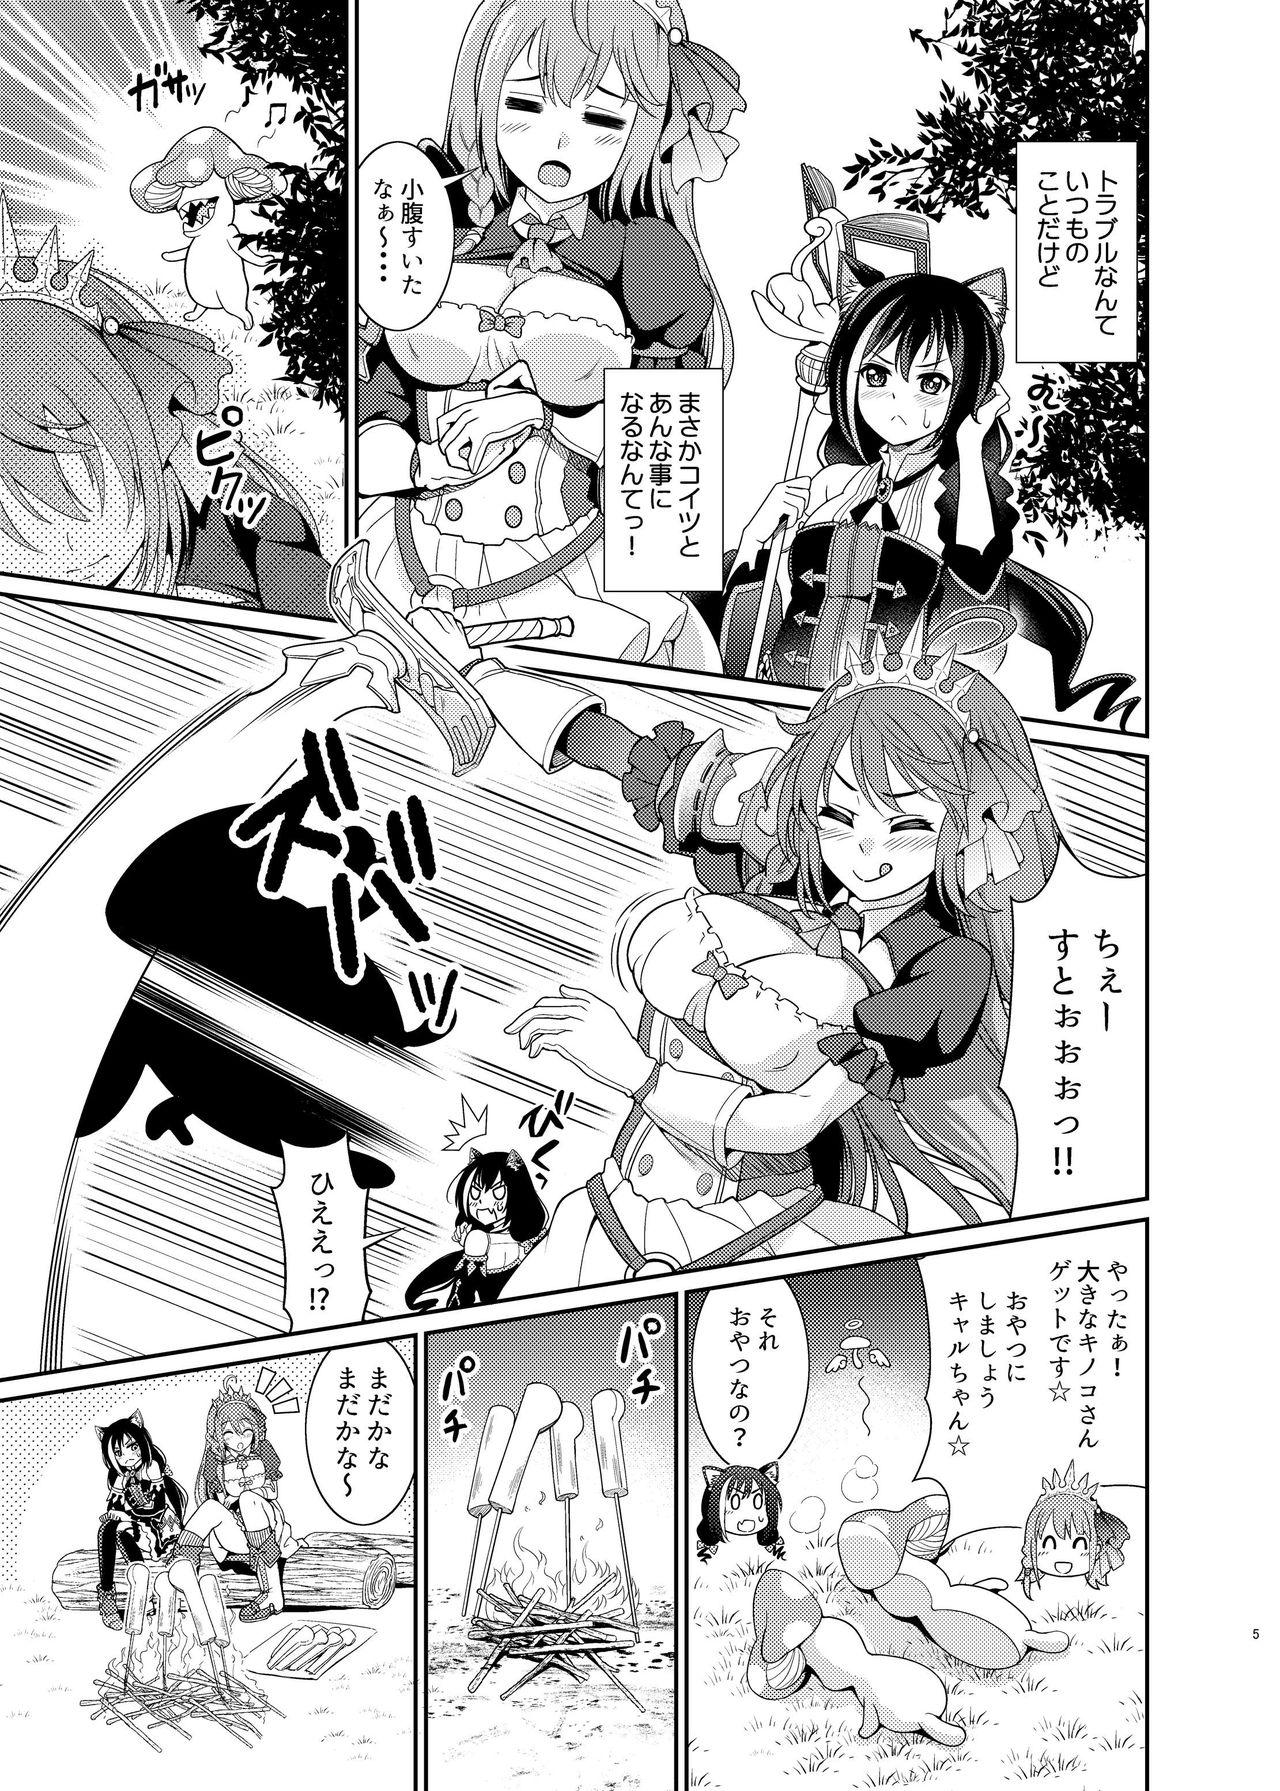 Hard Core Sex Mamono Nante Tabaru Kara ... Ochinchin ga Hae chaunoyo!! - Princess connect Boob - Page 5